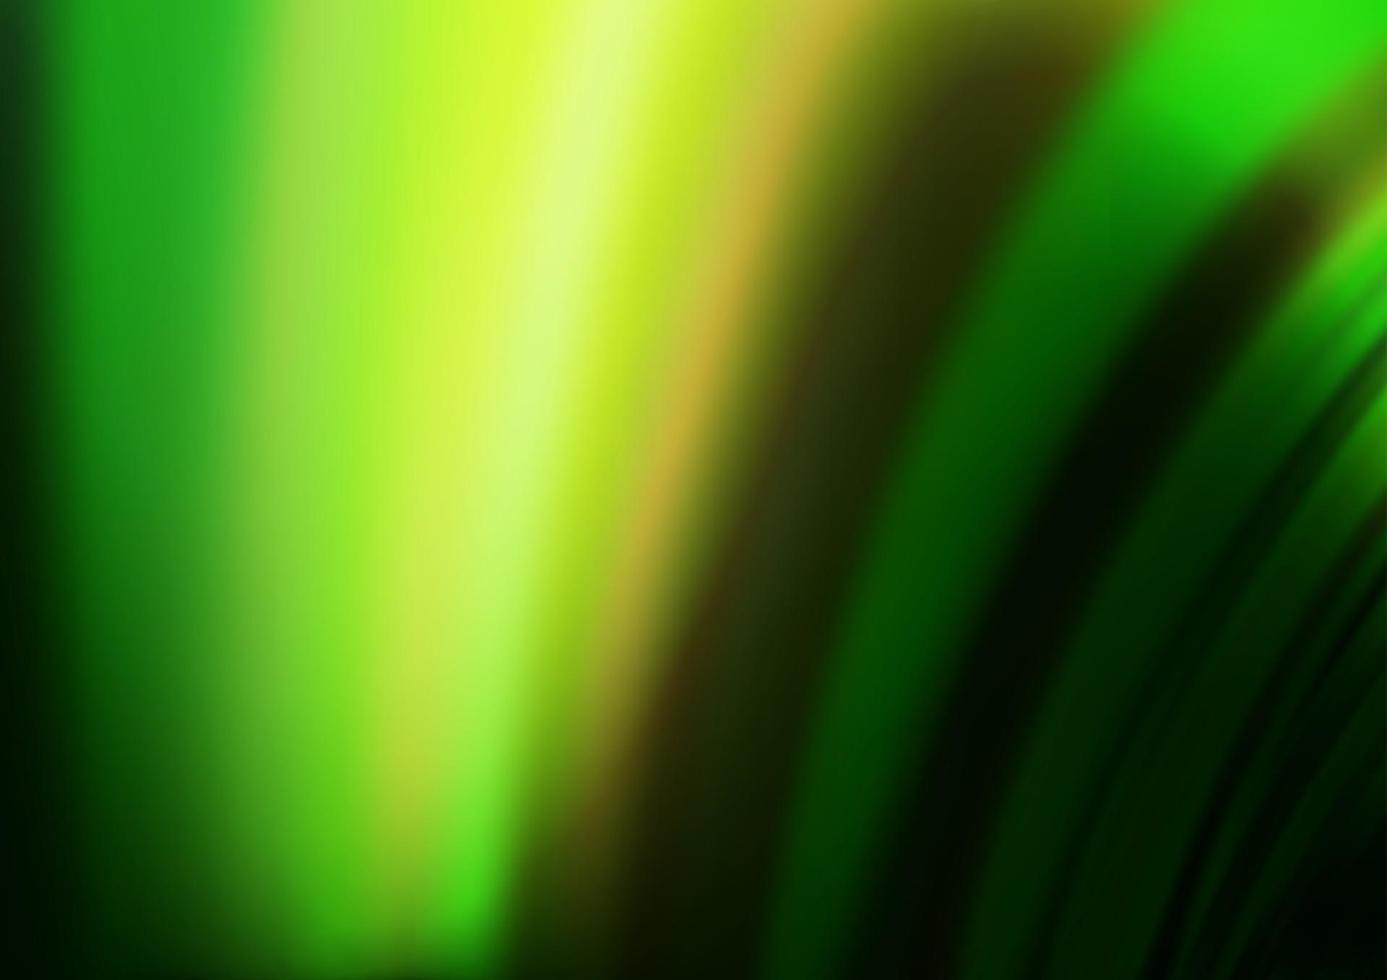 sfondo vettoriale verde scuro con cerchi curvi.